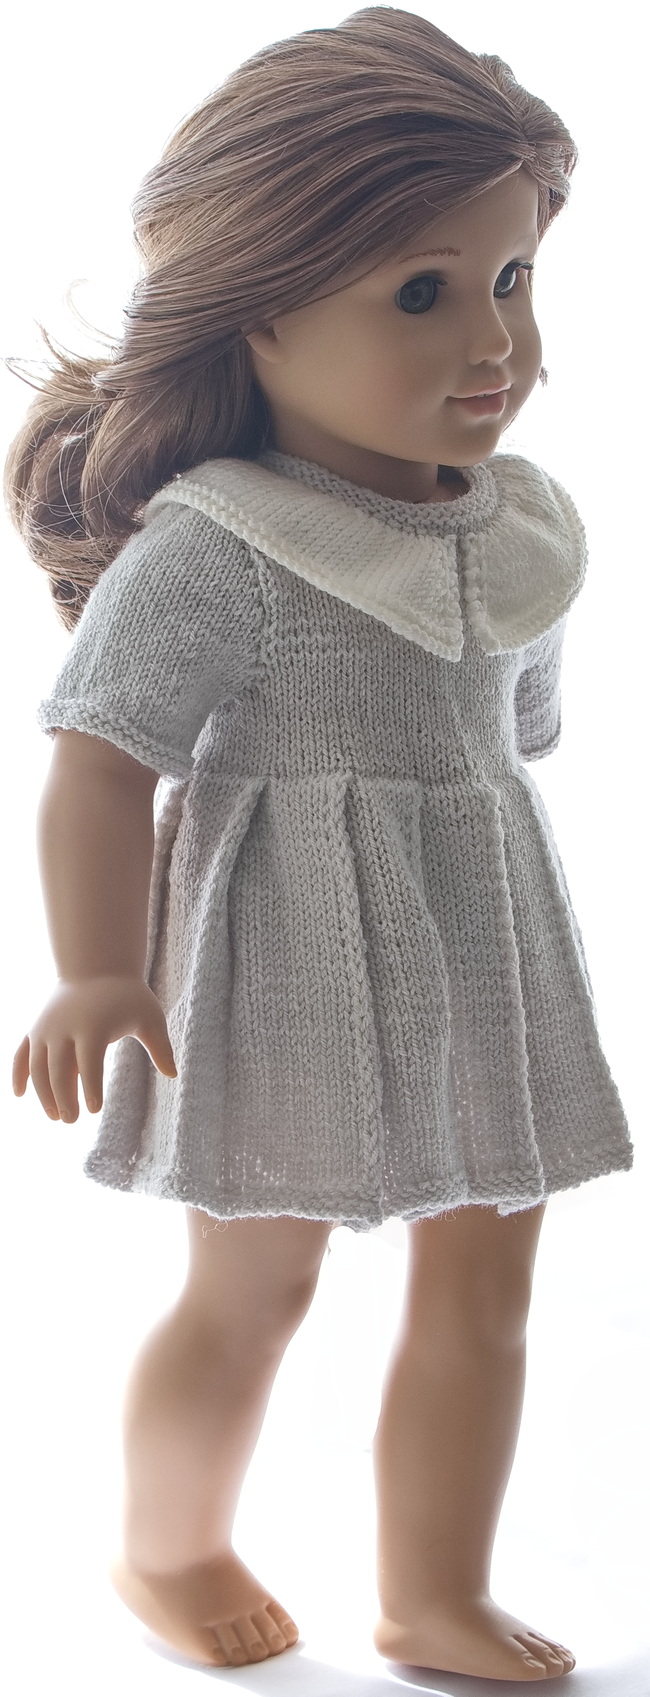 0241d-knitting-patterns-for-ag-dolls-02.jpg